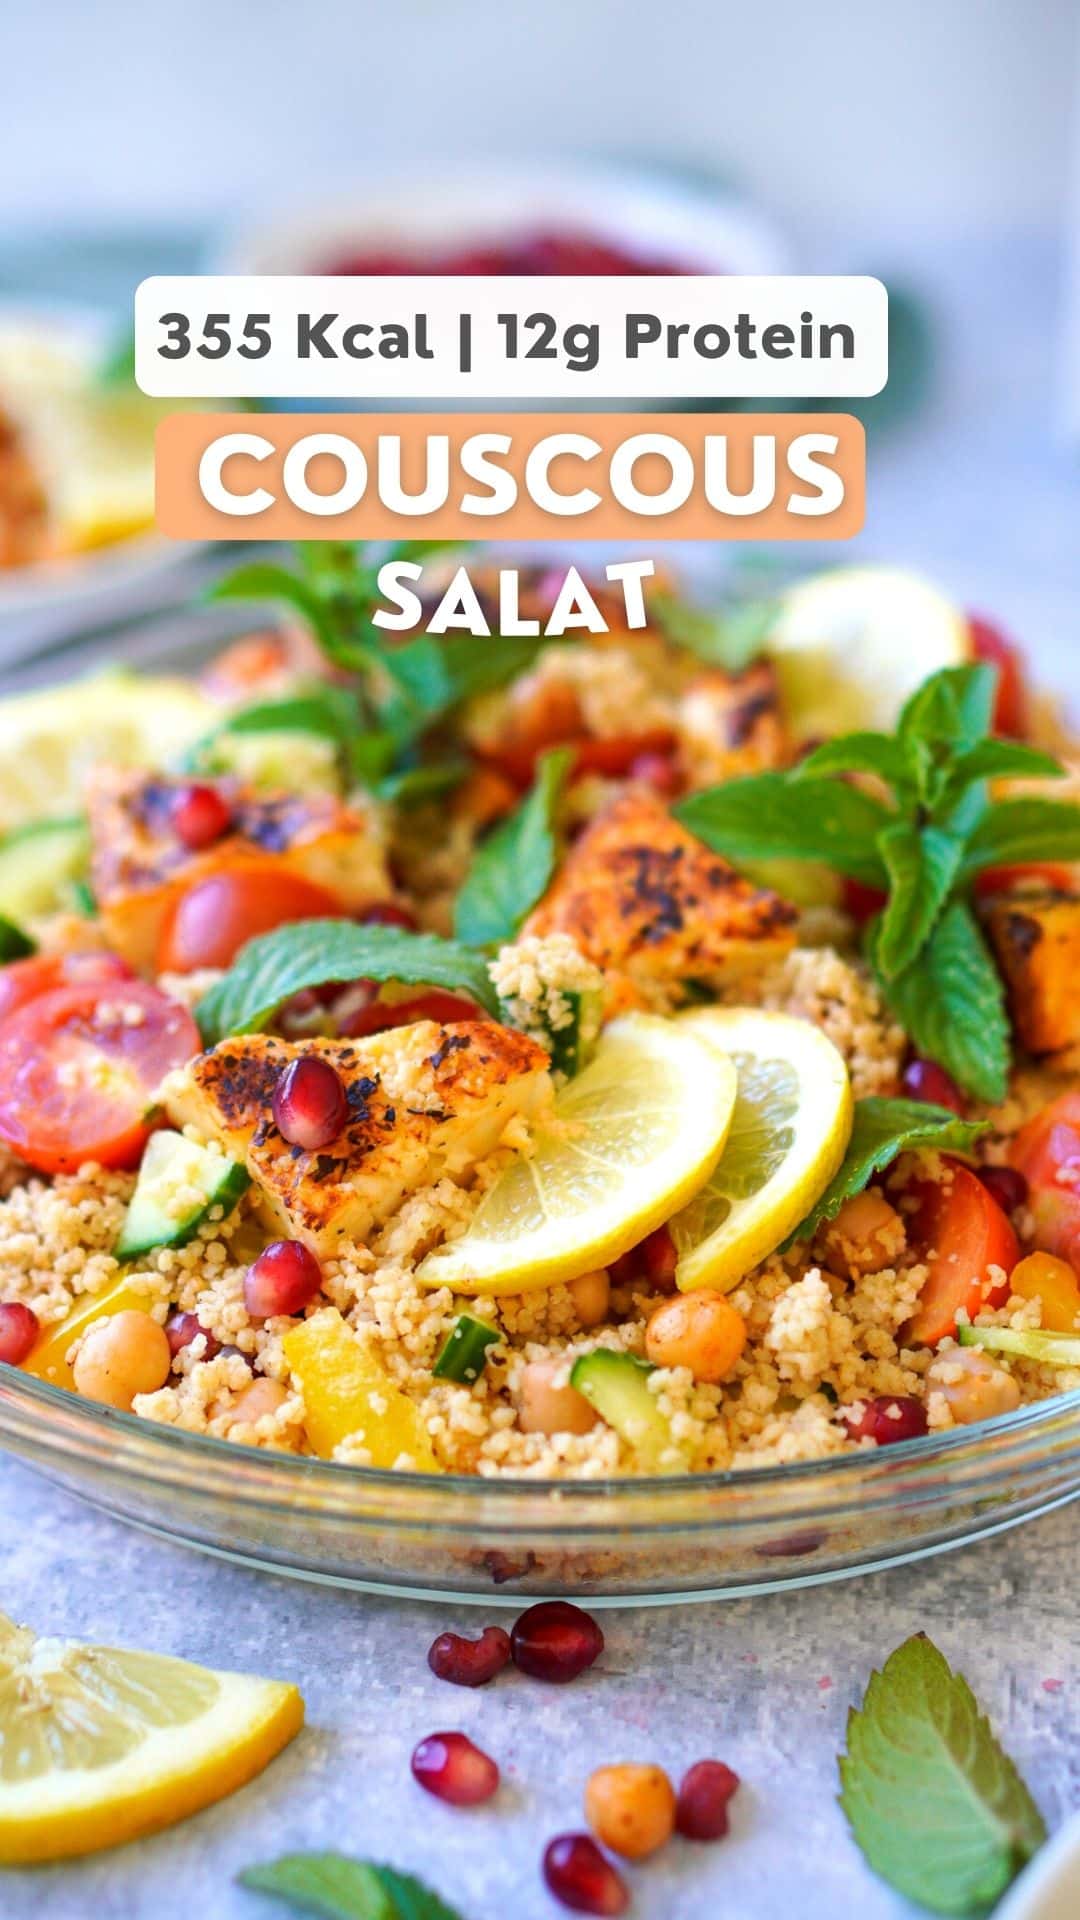 Couscous Salat mit Minze und Granatapfel - vegan